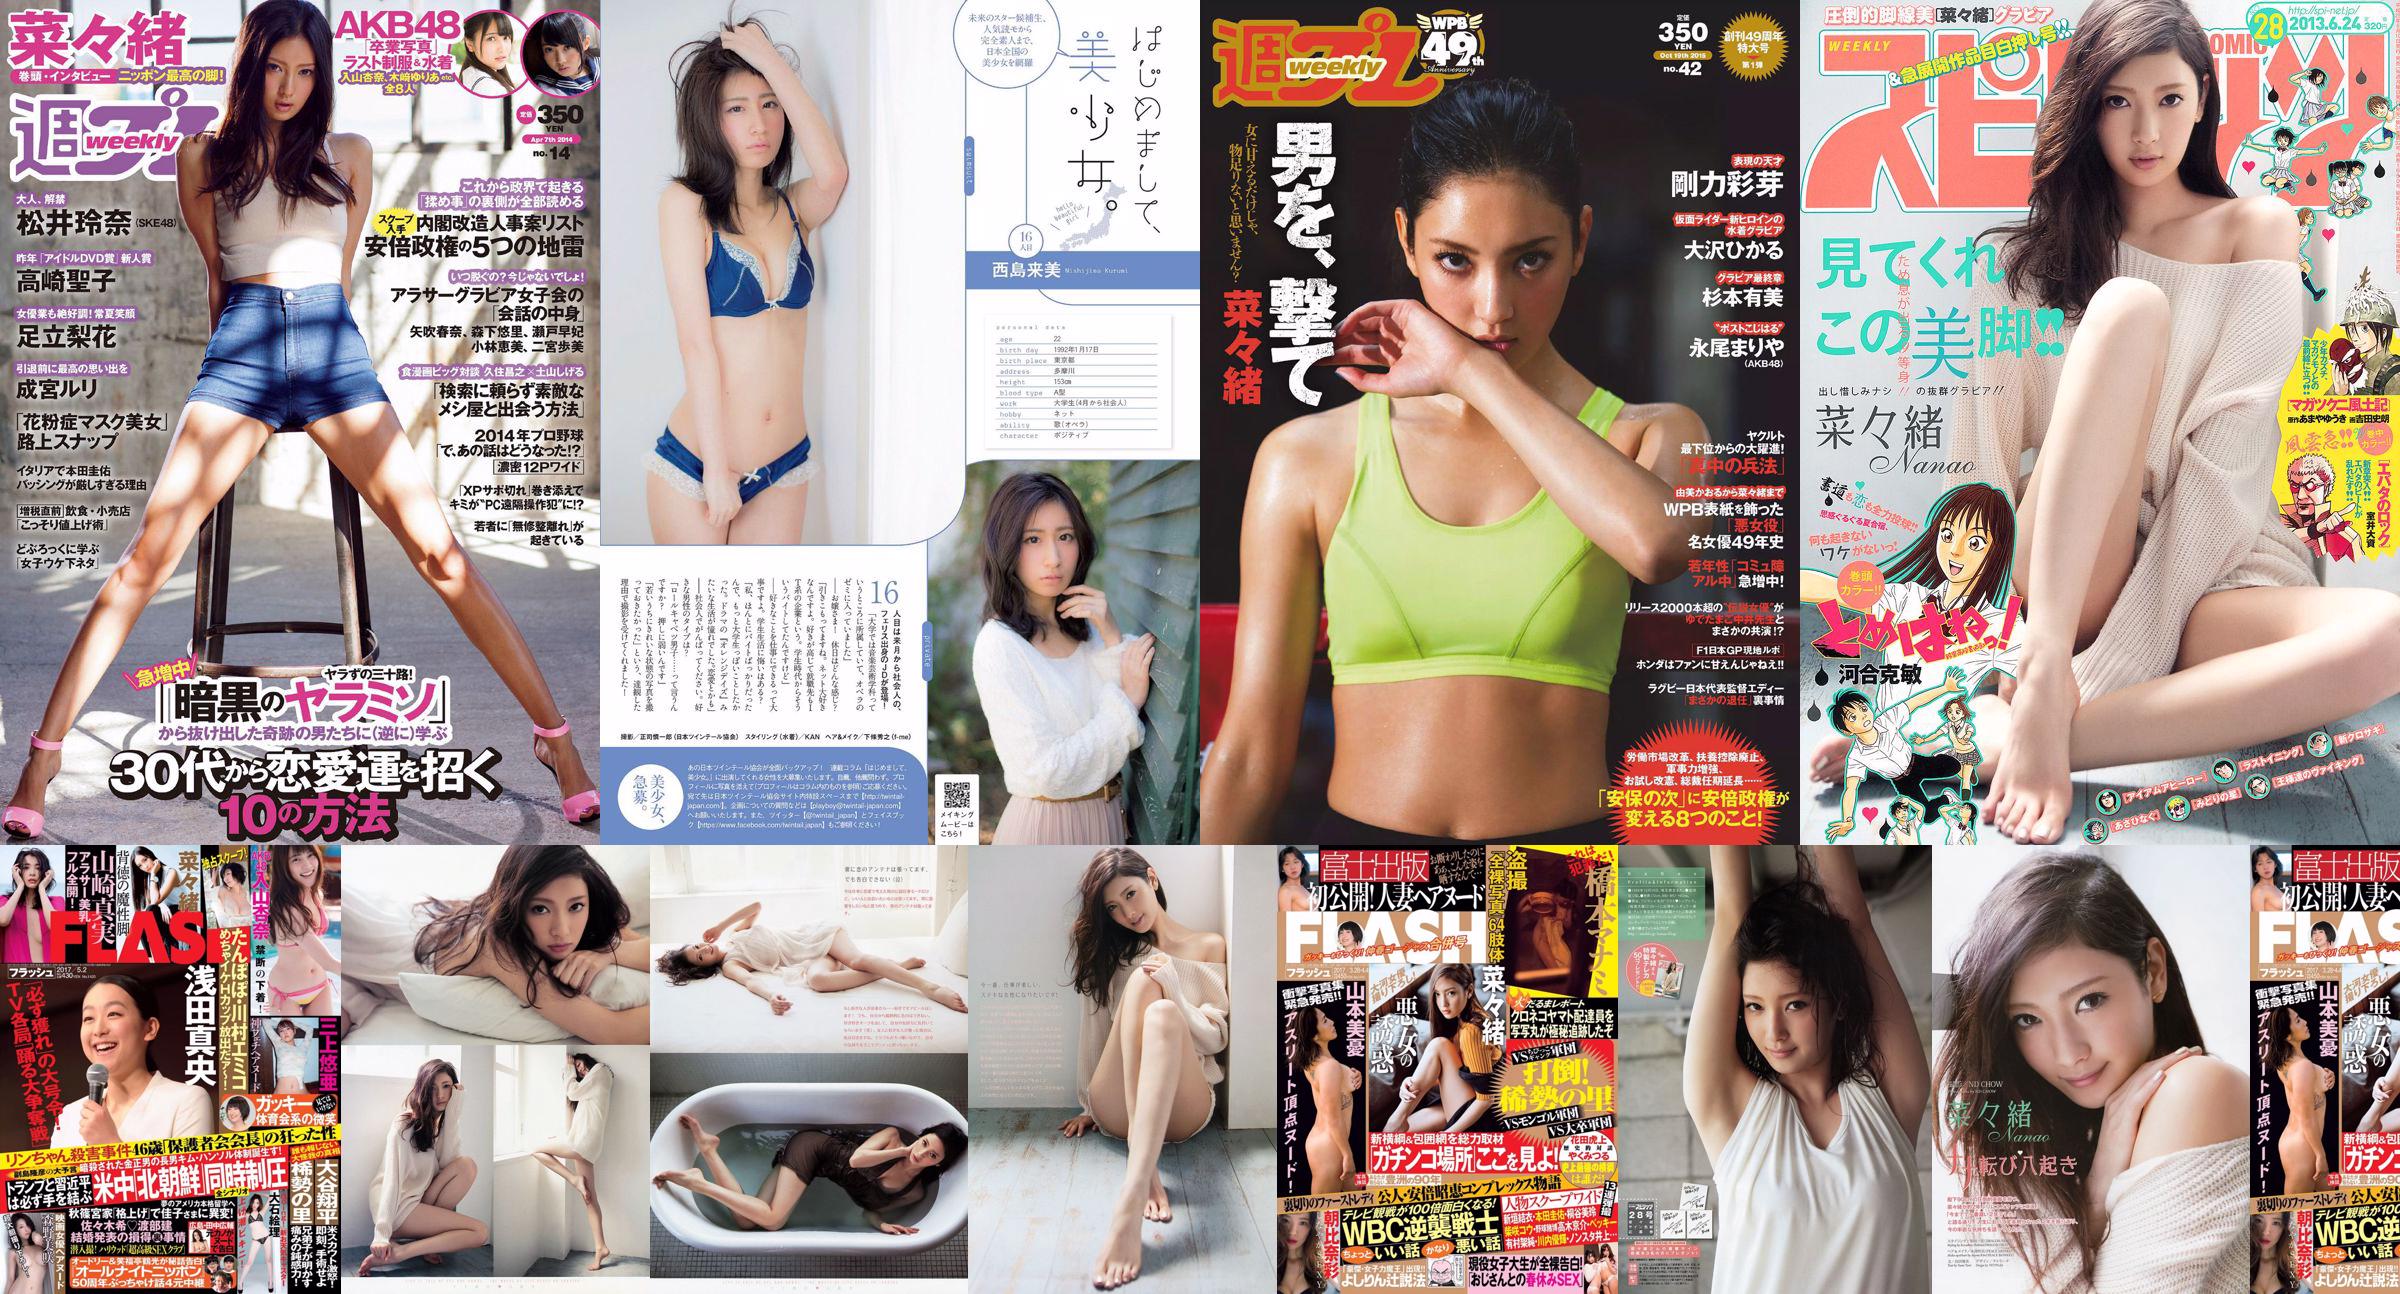 Nanao Rena Matsui Rika Adachi Natsuo Sawada Seiko Takasaki Nekomu Otogi Minami Kojima Ruri Narumiya [Wöchentlicher Playboy] 2014 Nr. 14 Foto No.ad78cb Seite 16